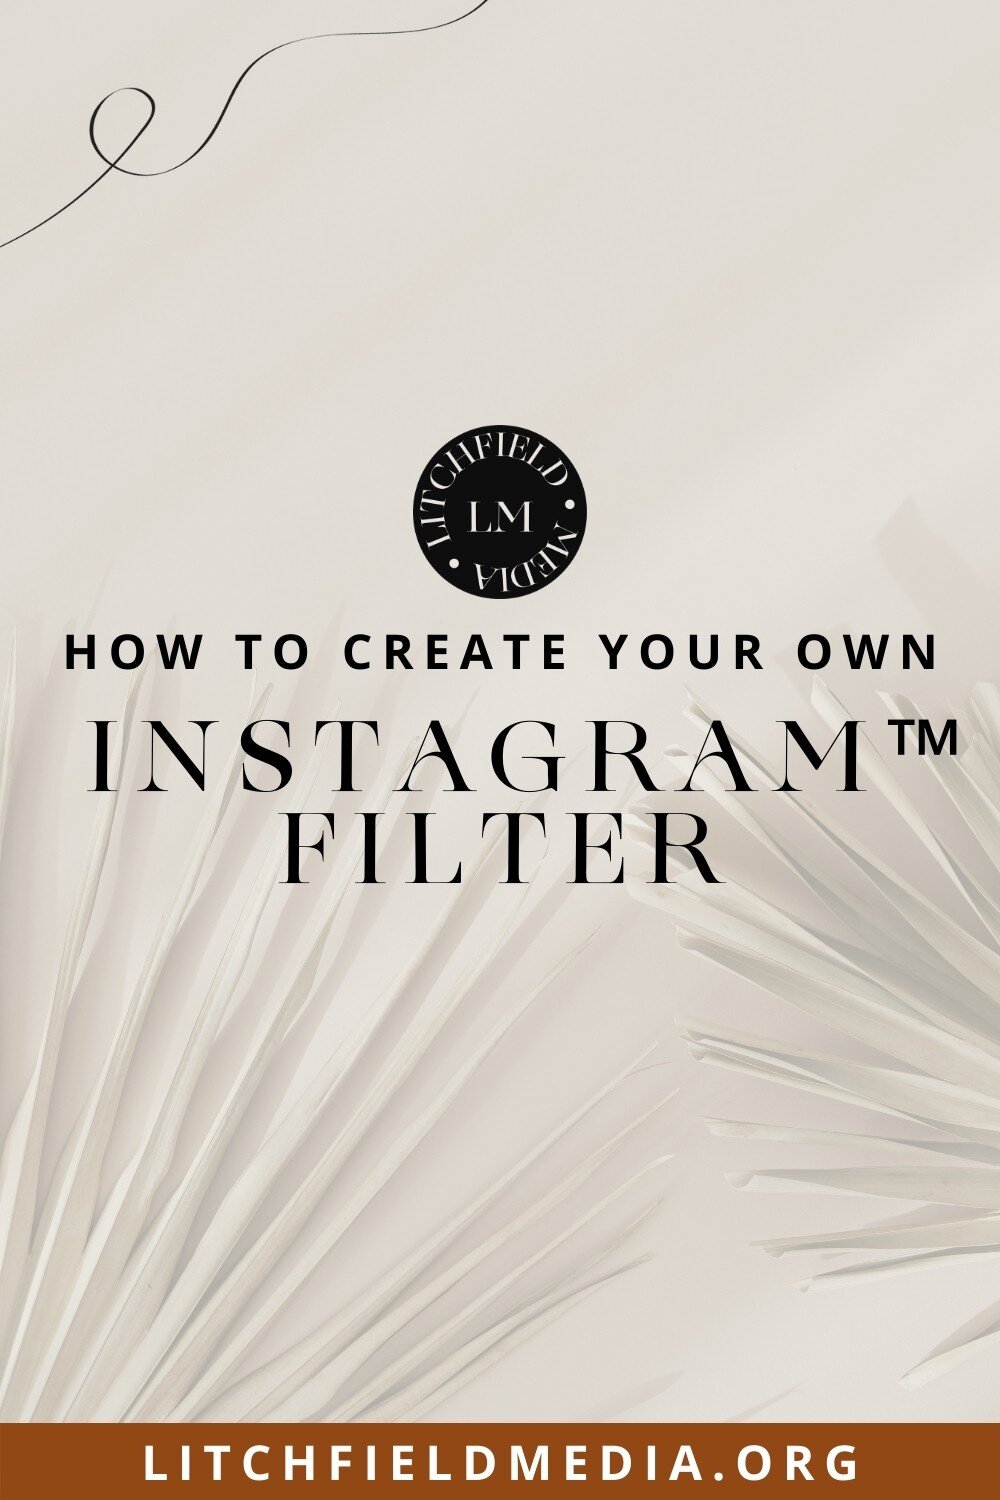 Instagram filter | IG filter | sparkar |sparkar community | filter effects | IG filter effects